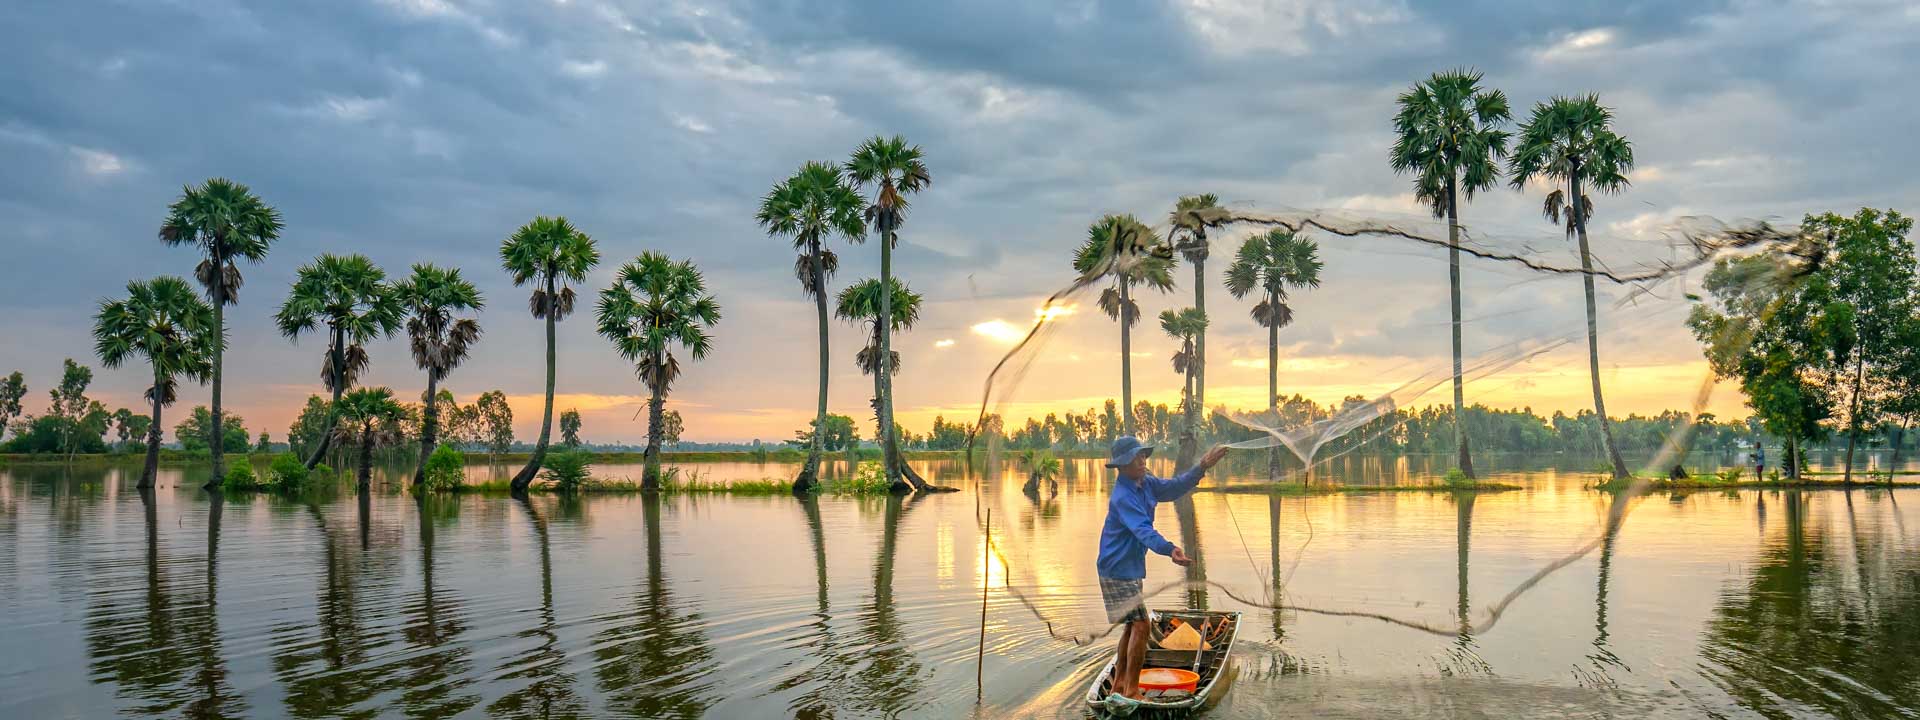 Viajes a Vietnam Camboya Tailandia 21 días